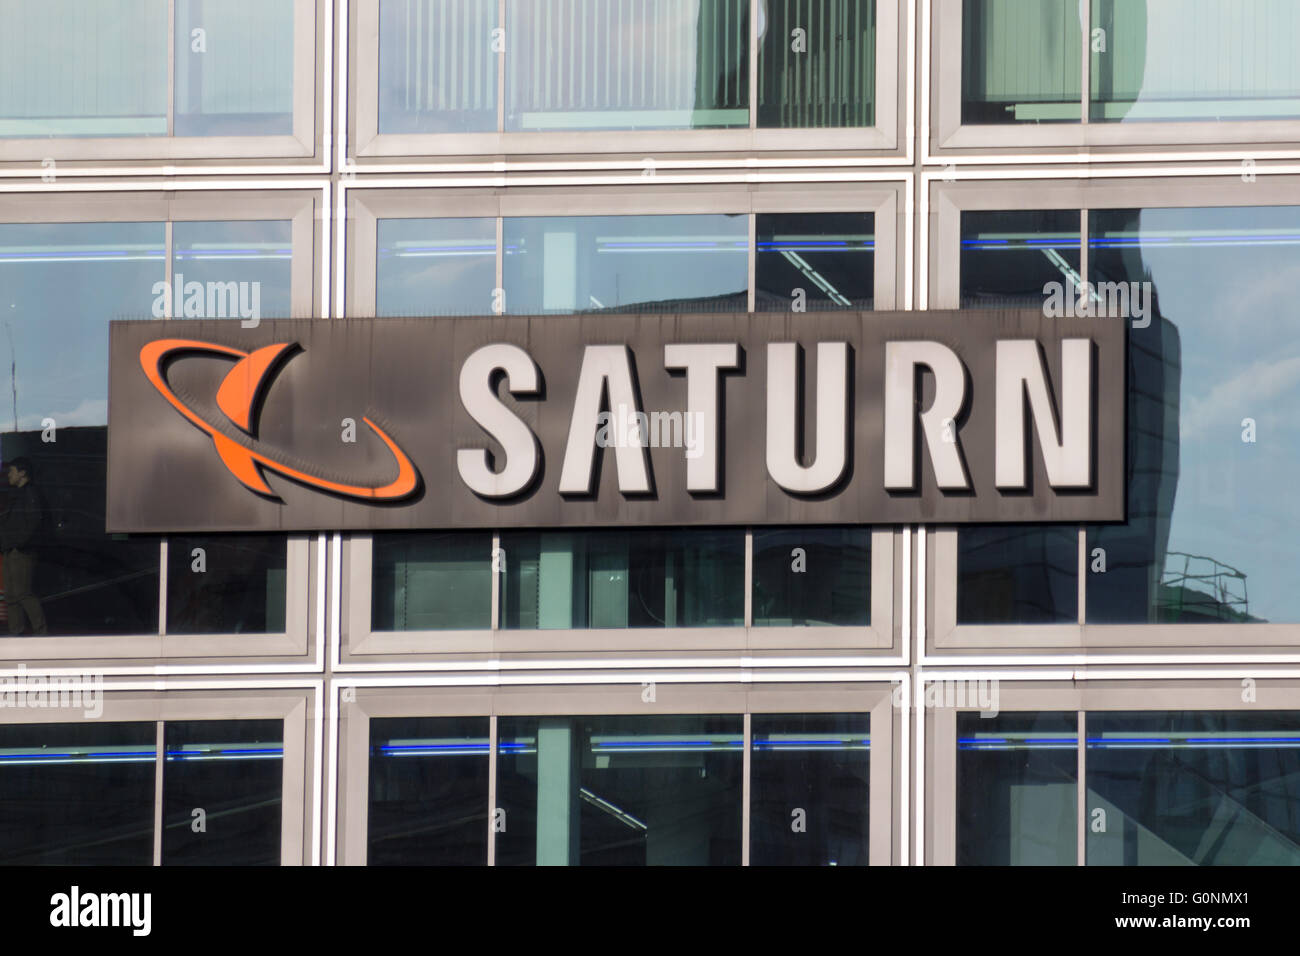 Logo magasin Saturn. Saturne est une chaîne allemande de magasins d'électronique, maintenant présente dans plusieurs pays d'Europe. Banque D'Images